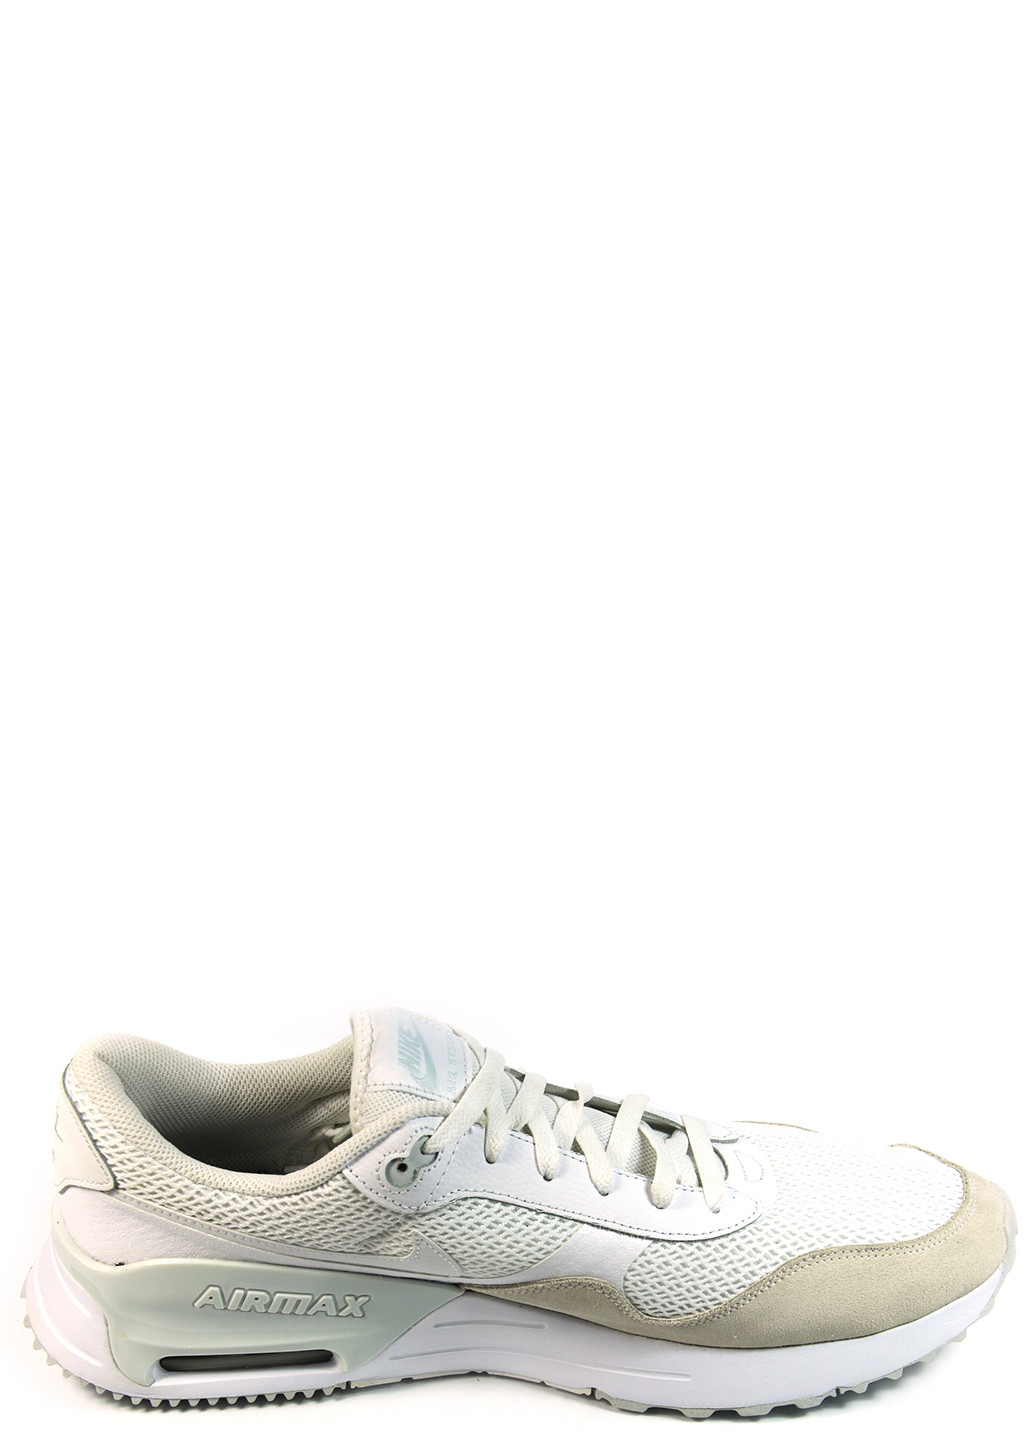 Цветные демисезонные мужские кроссовки air max systm dm9537-101 Nike